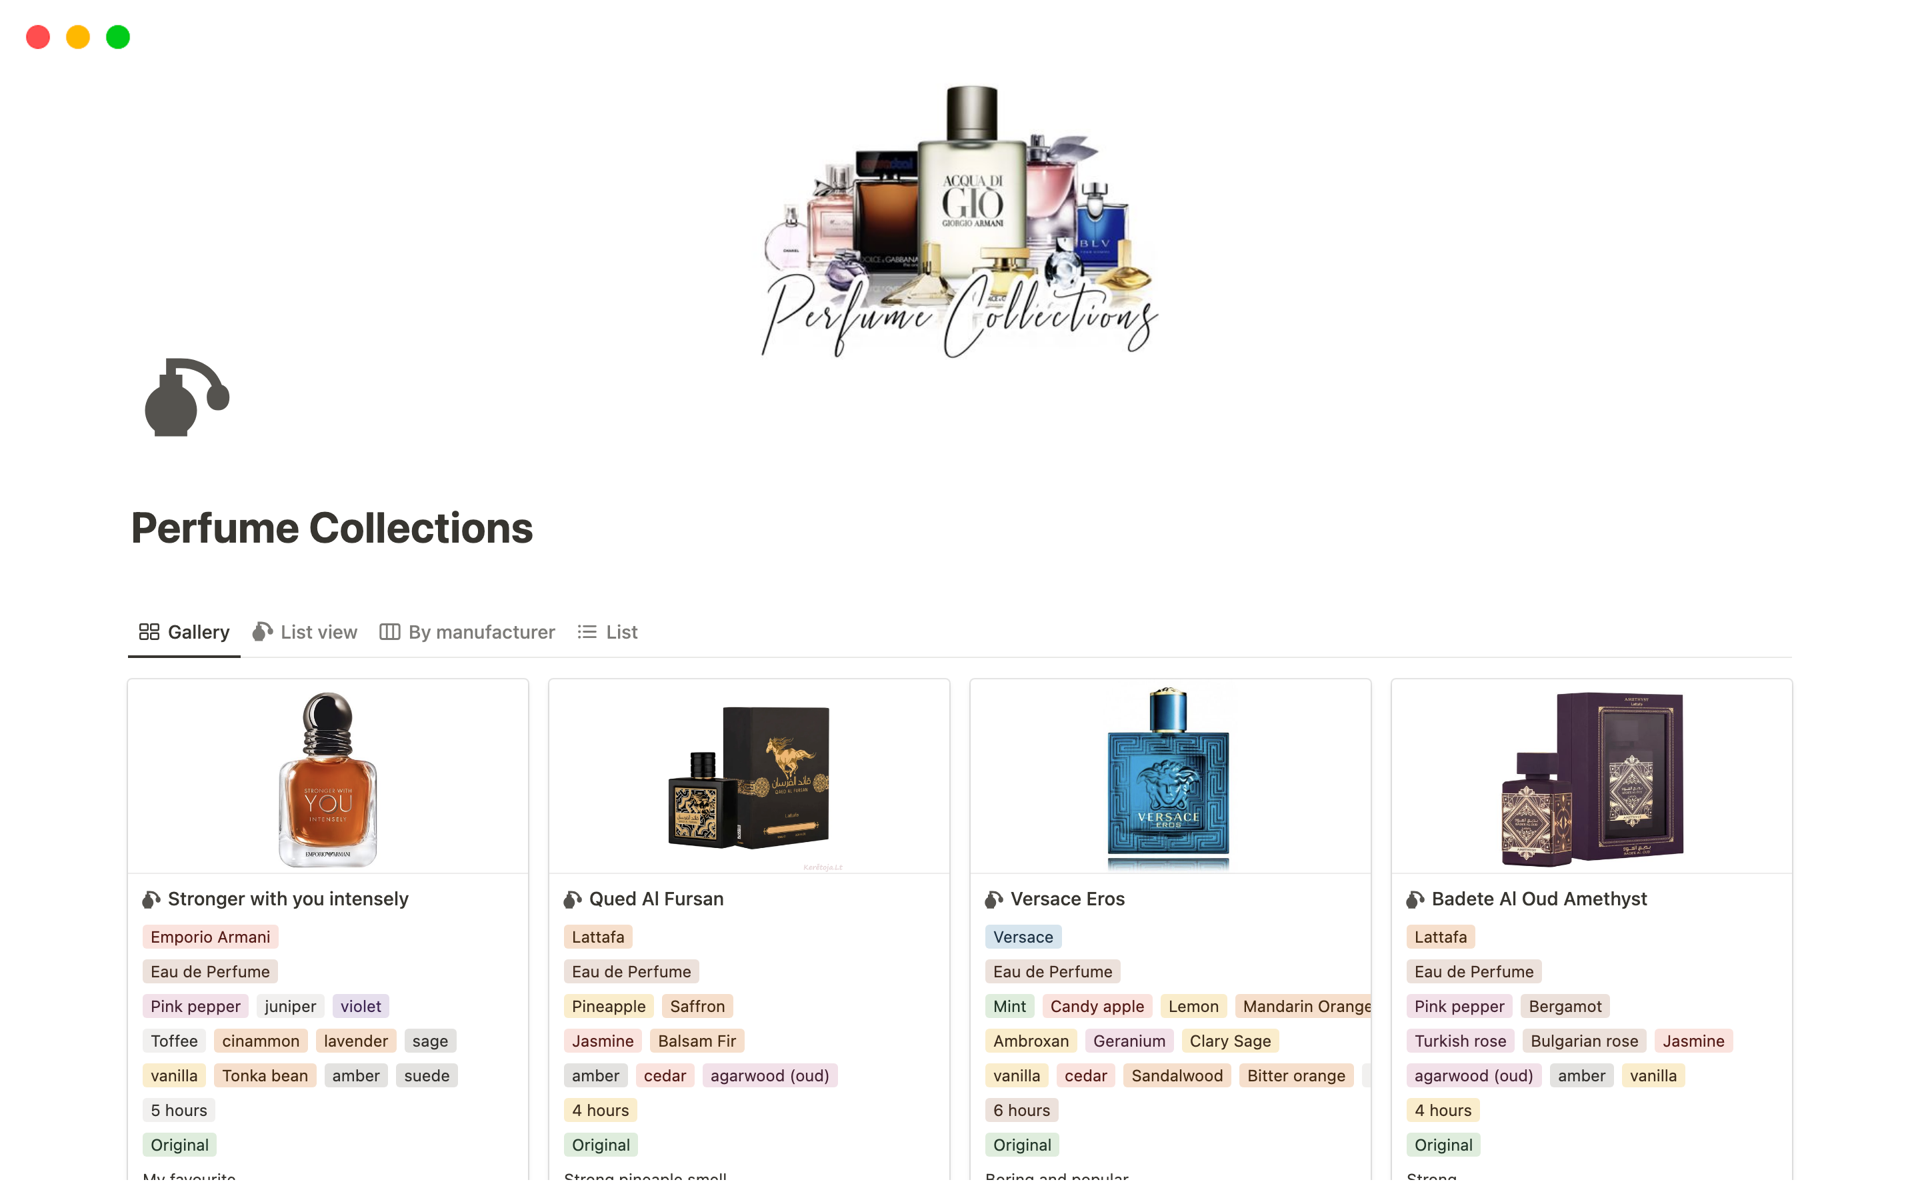 Vista previa de una plantilla para Perfume Collections